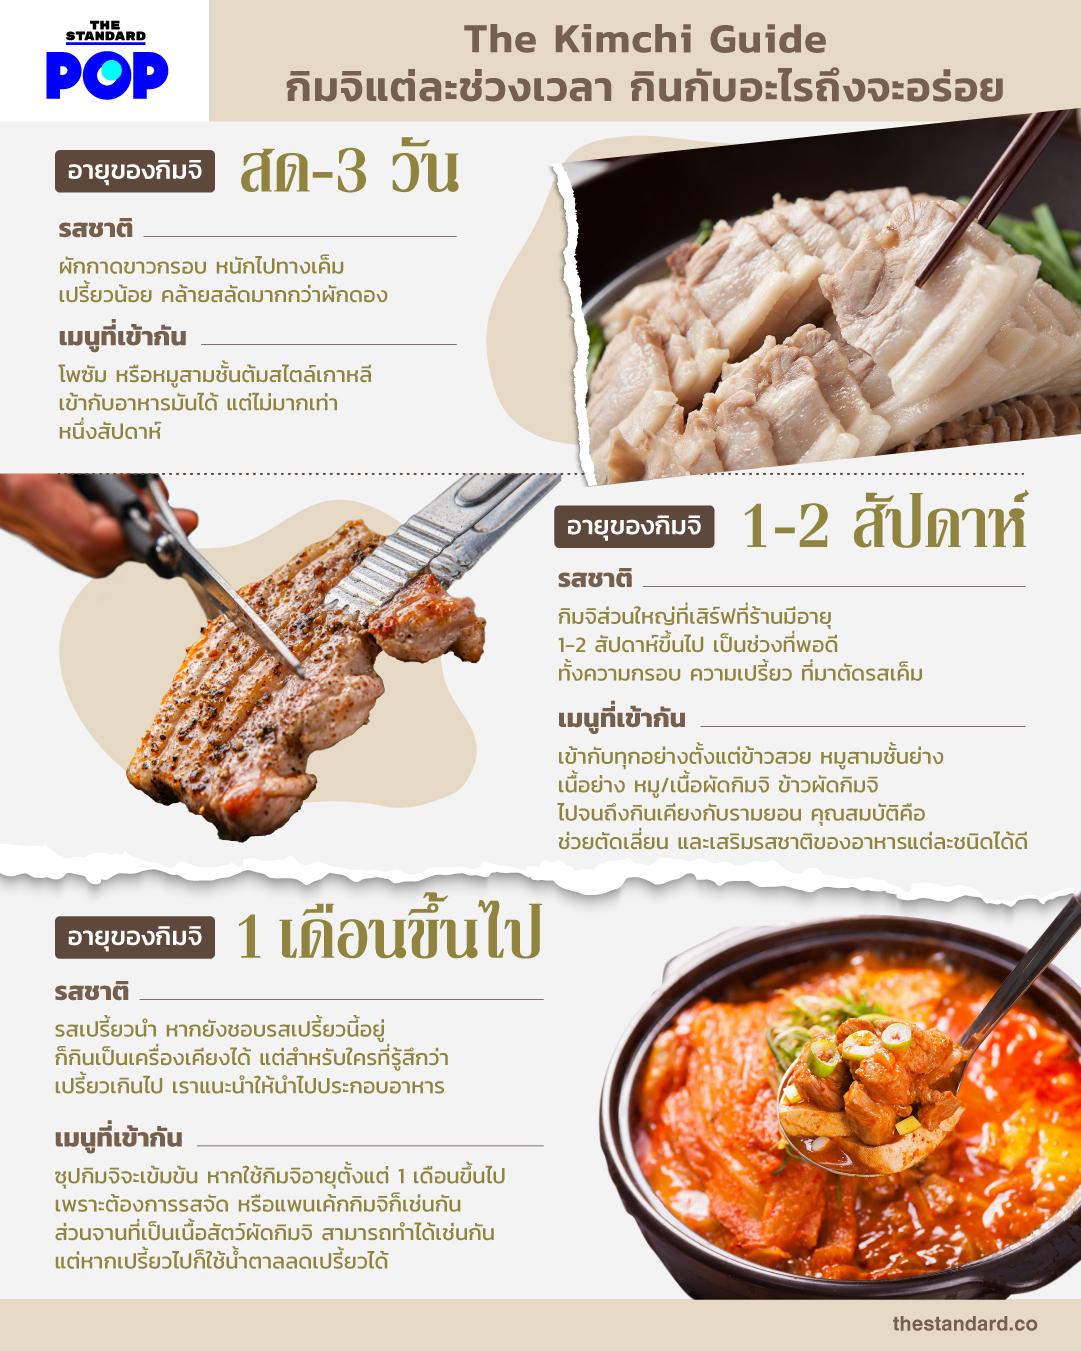 The Kimchi Guide กิมจิแต่ละช่วงเวลา กินกับอะไรถึงจะอร่อย 